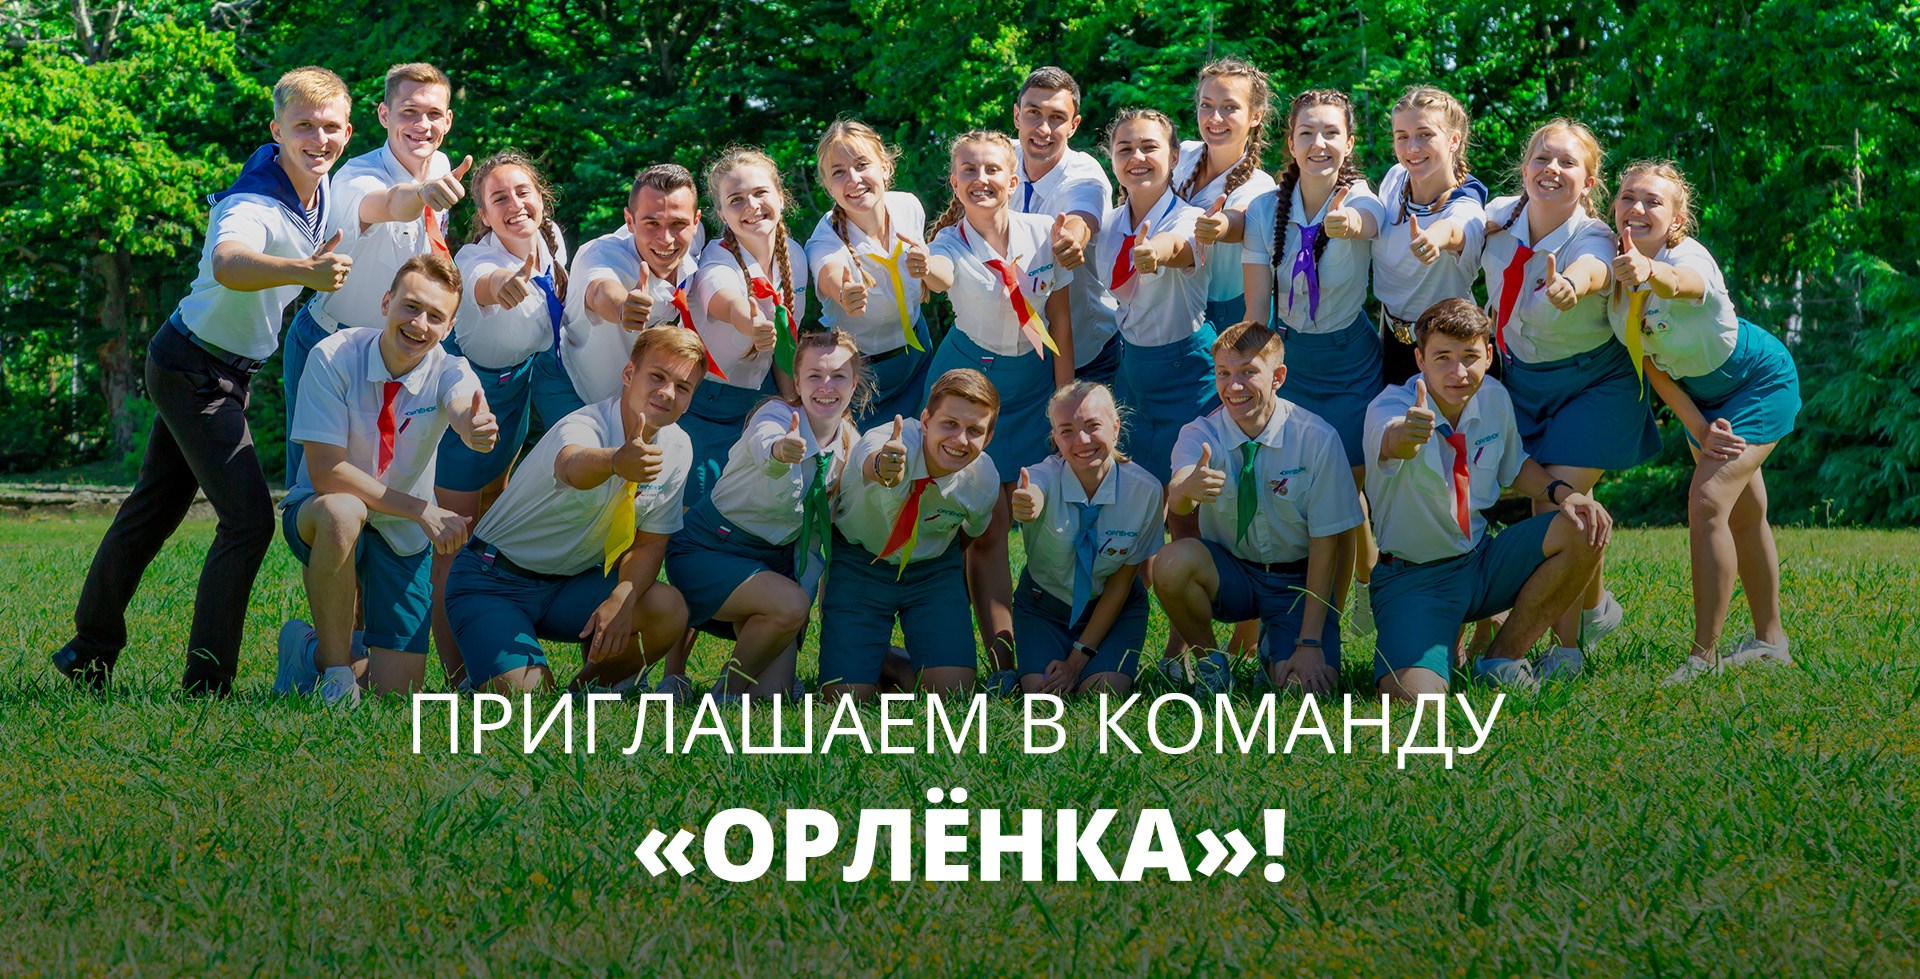 Российский центр подготовки вожатых «Ориентир» объявляет о наборе вожатых во Всероссийский детский центр «Орленок»